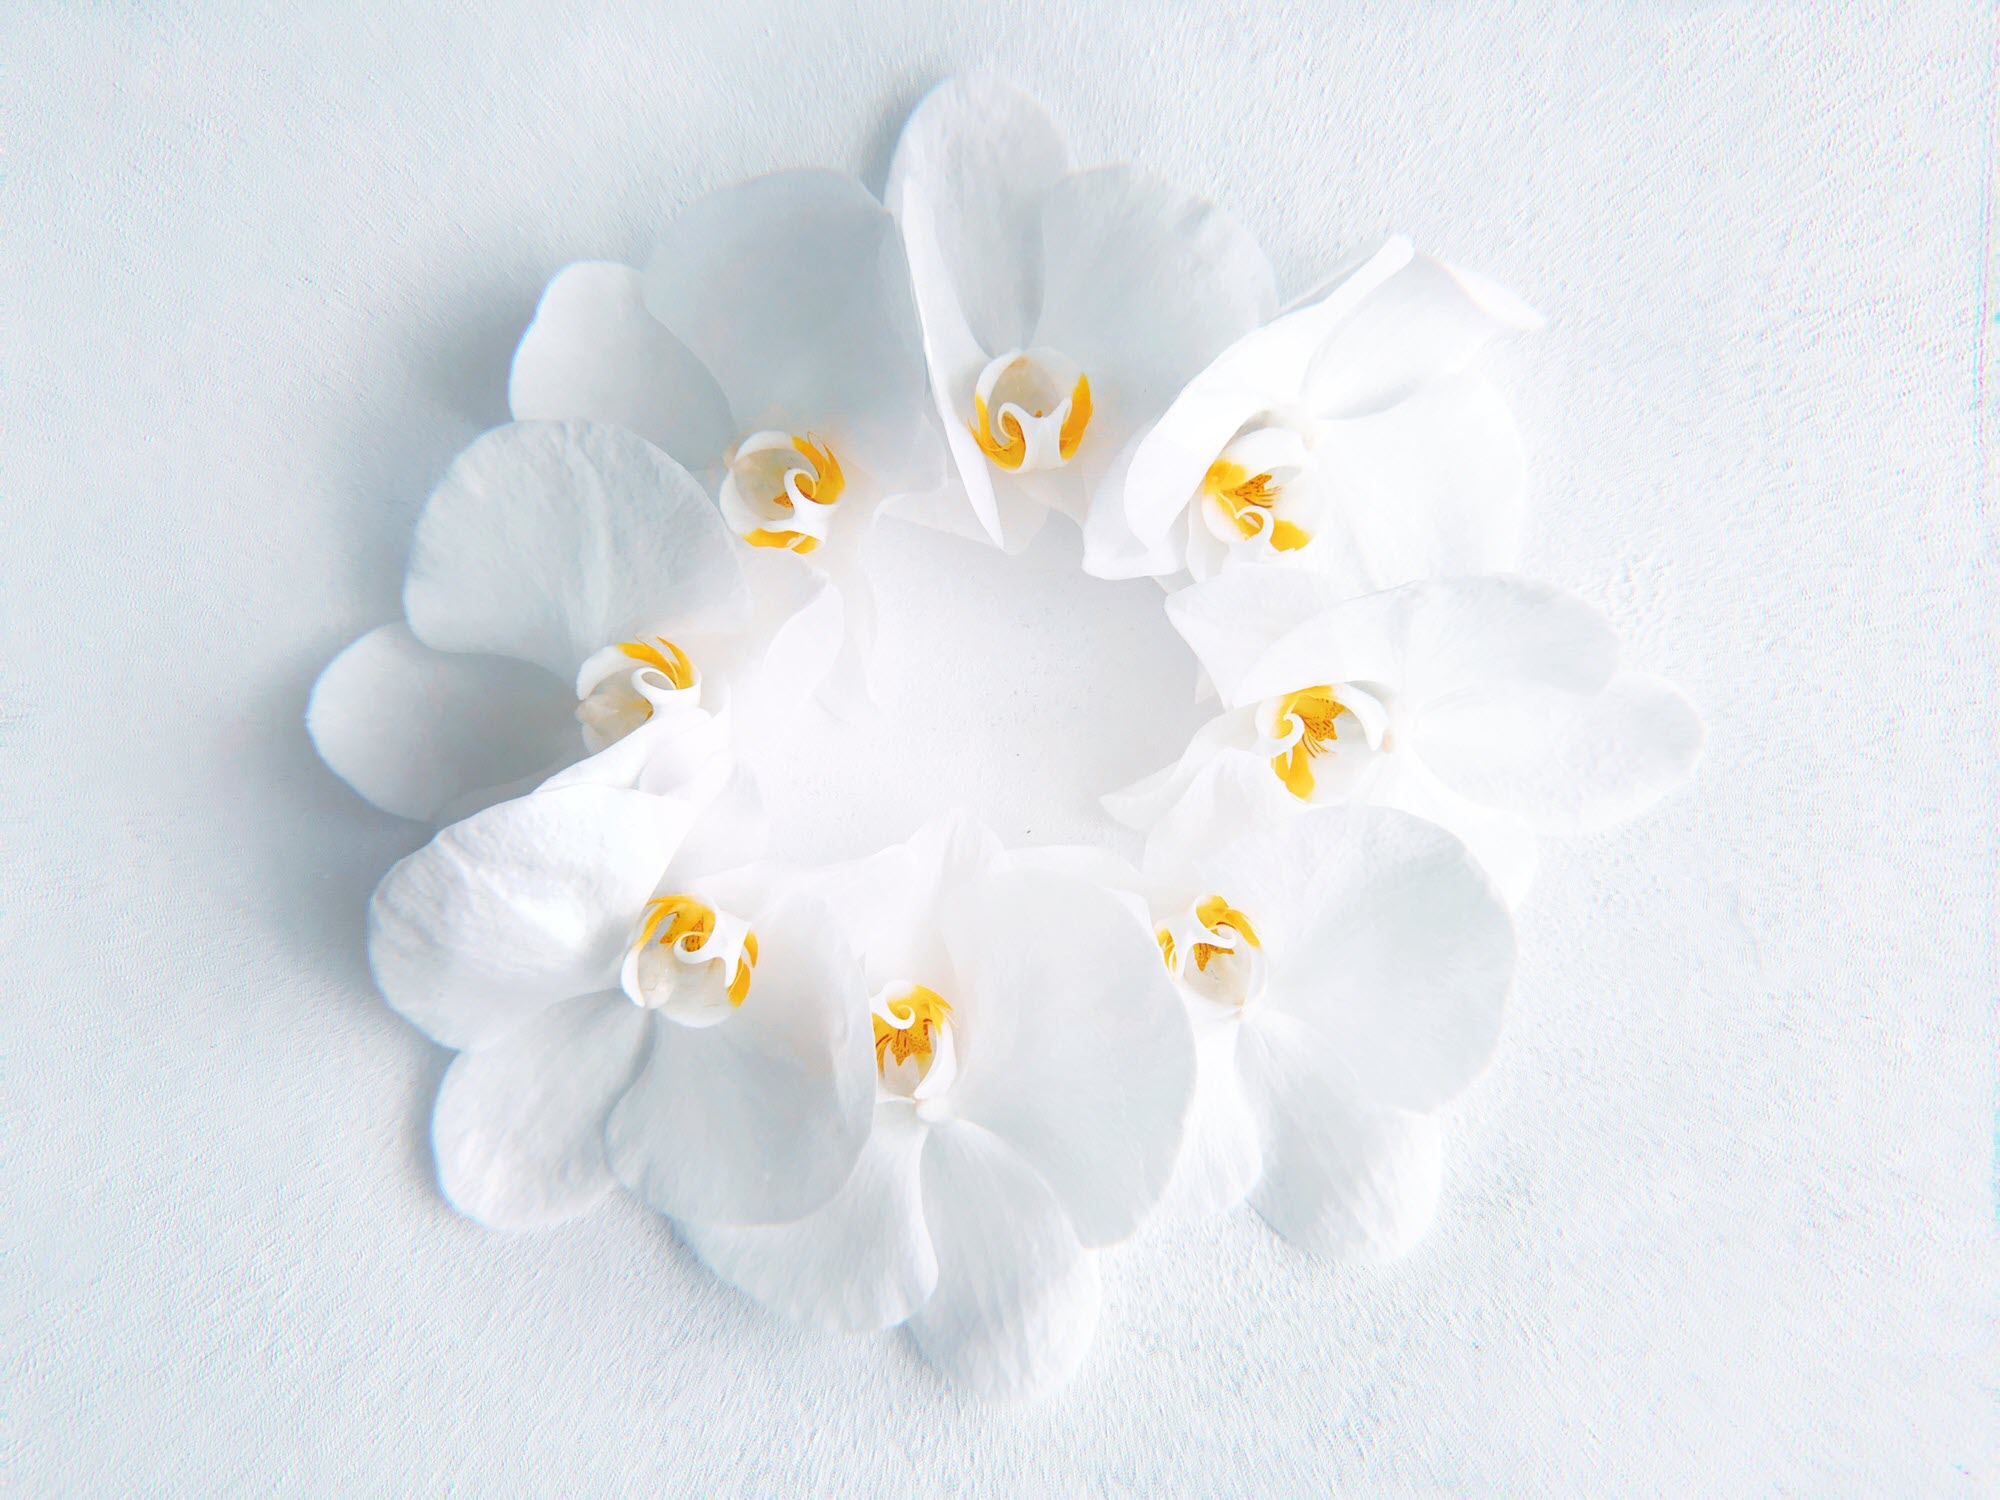 Hình ảnh hoa trắng tuyệt đẹp nhất